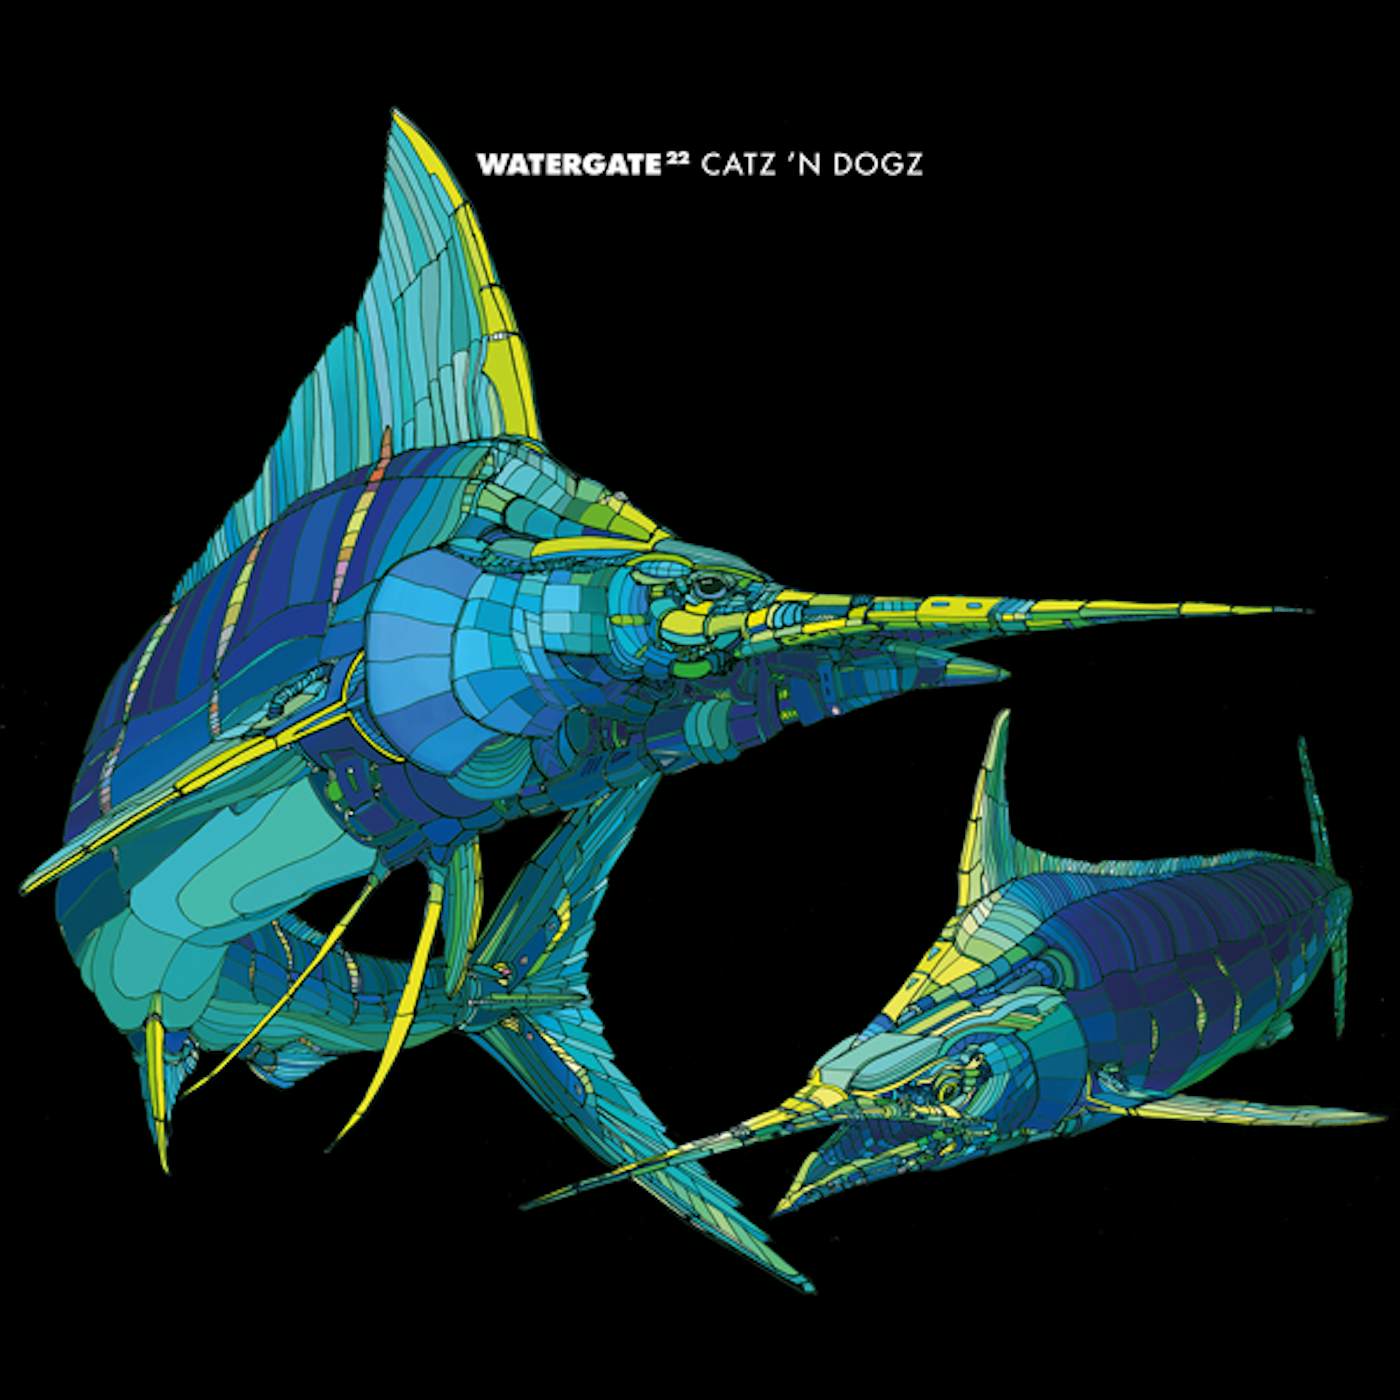 Catz 'n Dogz WATERGATE 22 CD